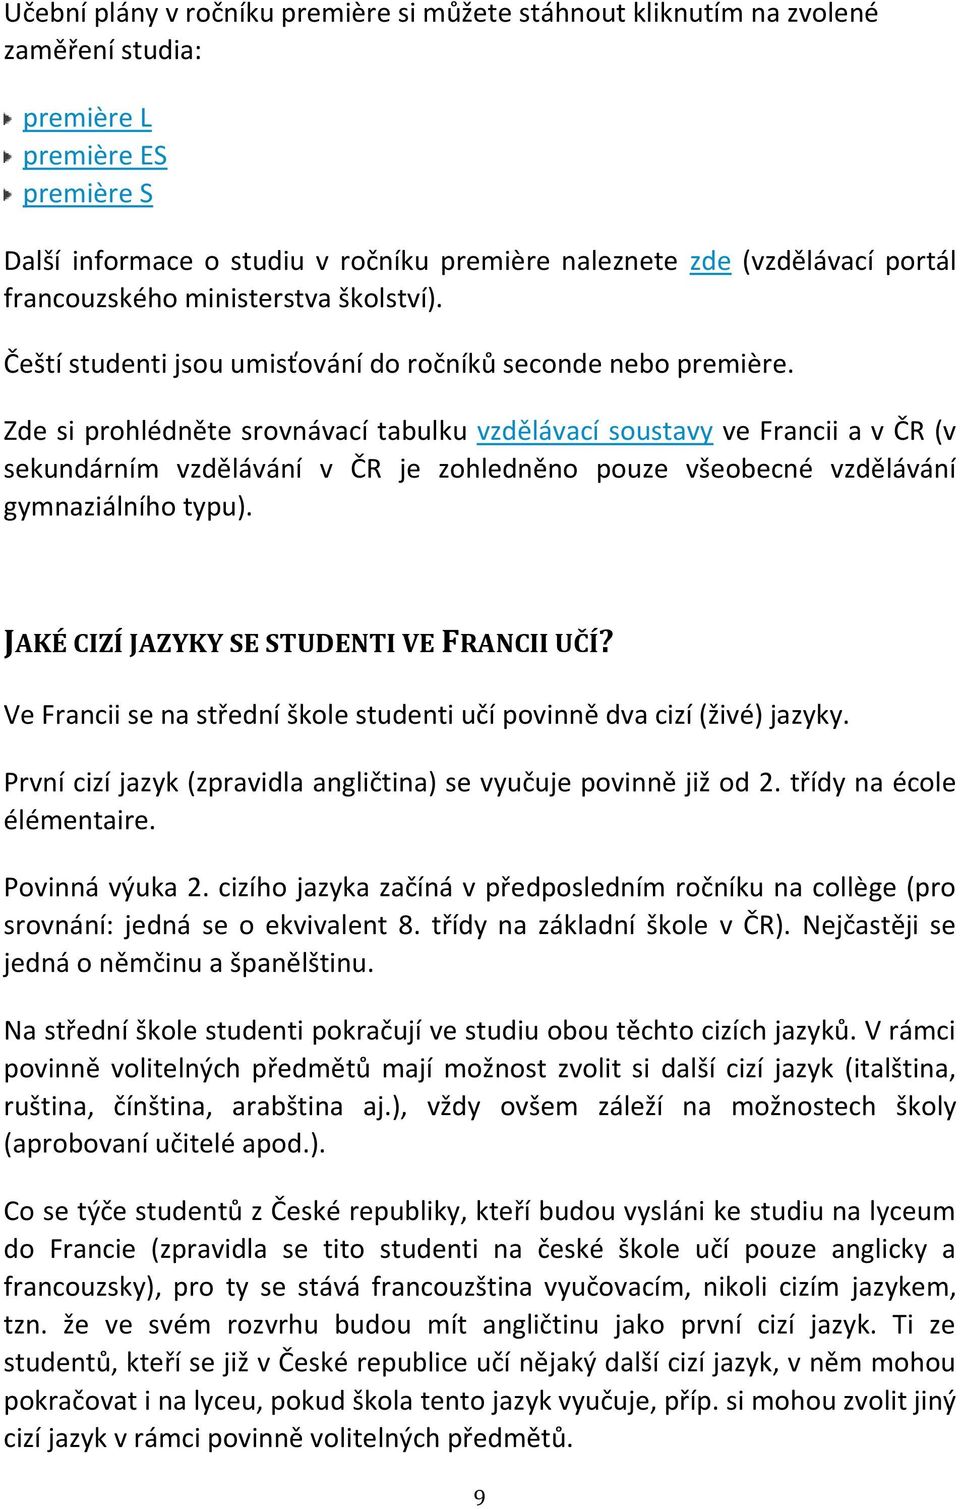 Zde si prohlédněte srovnávací tabulku vzdělávací soustavy ve Francii a v ČR (v sekundárním vzdělávání v ČR je zohledněno pouze všeobecné vzdělávání gymnaziálního typu).